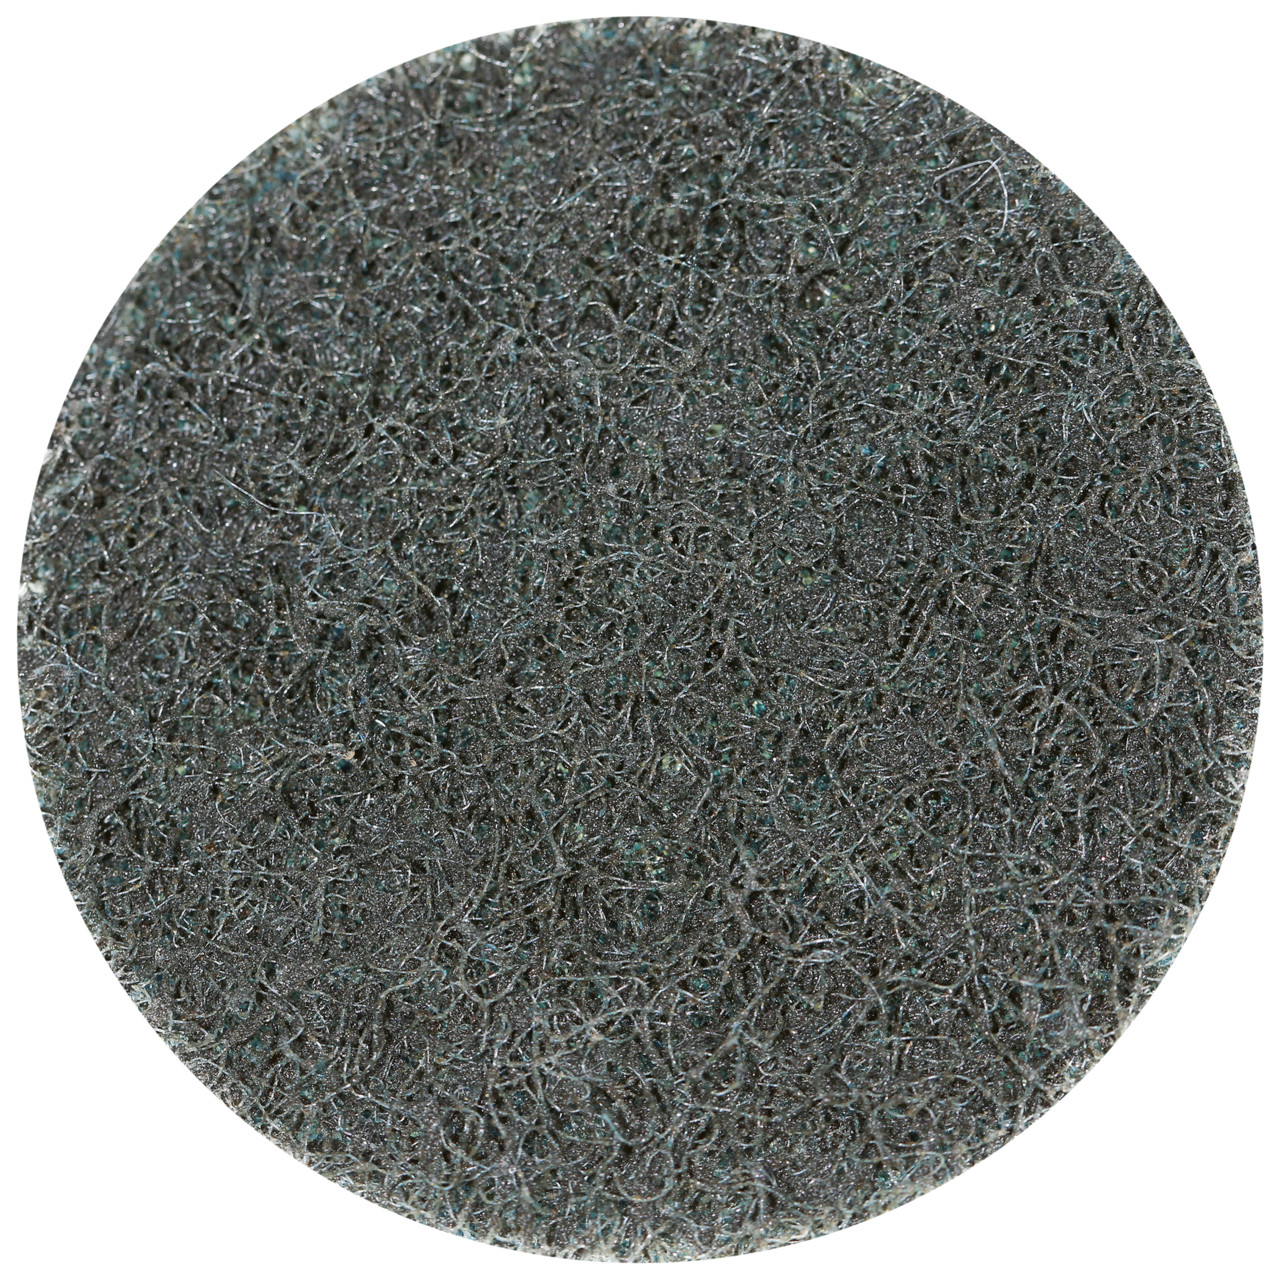 Tyrolit SCM QUICK CHANGE DISC Dimension 50xR Pour l'acier, l'acier inoxydable, les métaux non ferreux, le plastique et le bois, EXTRA GROS, Forme : QDISC, art. 34072695